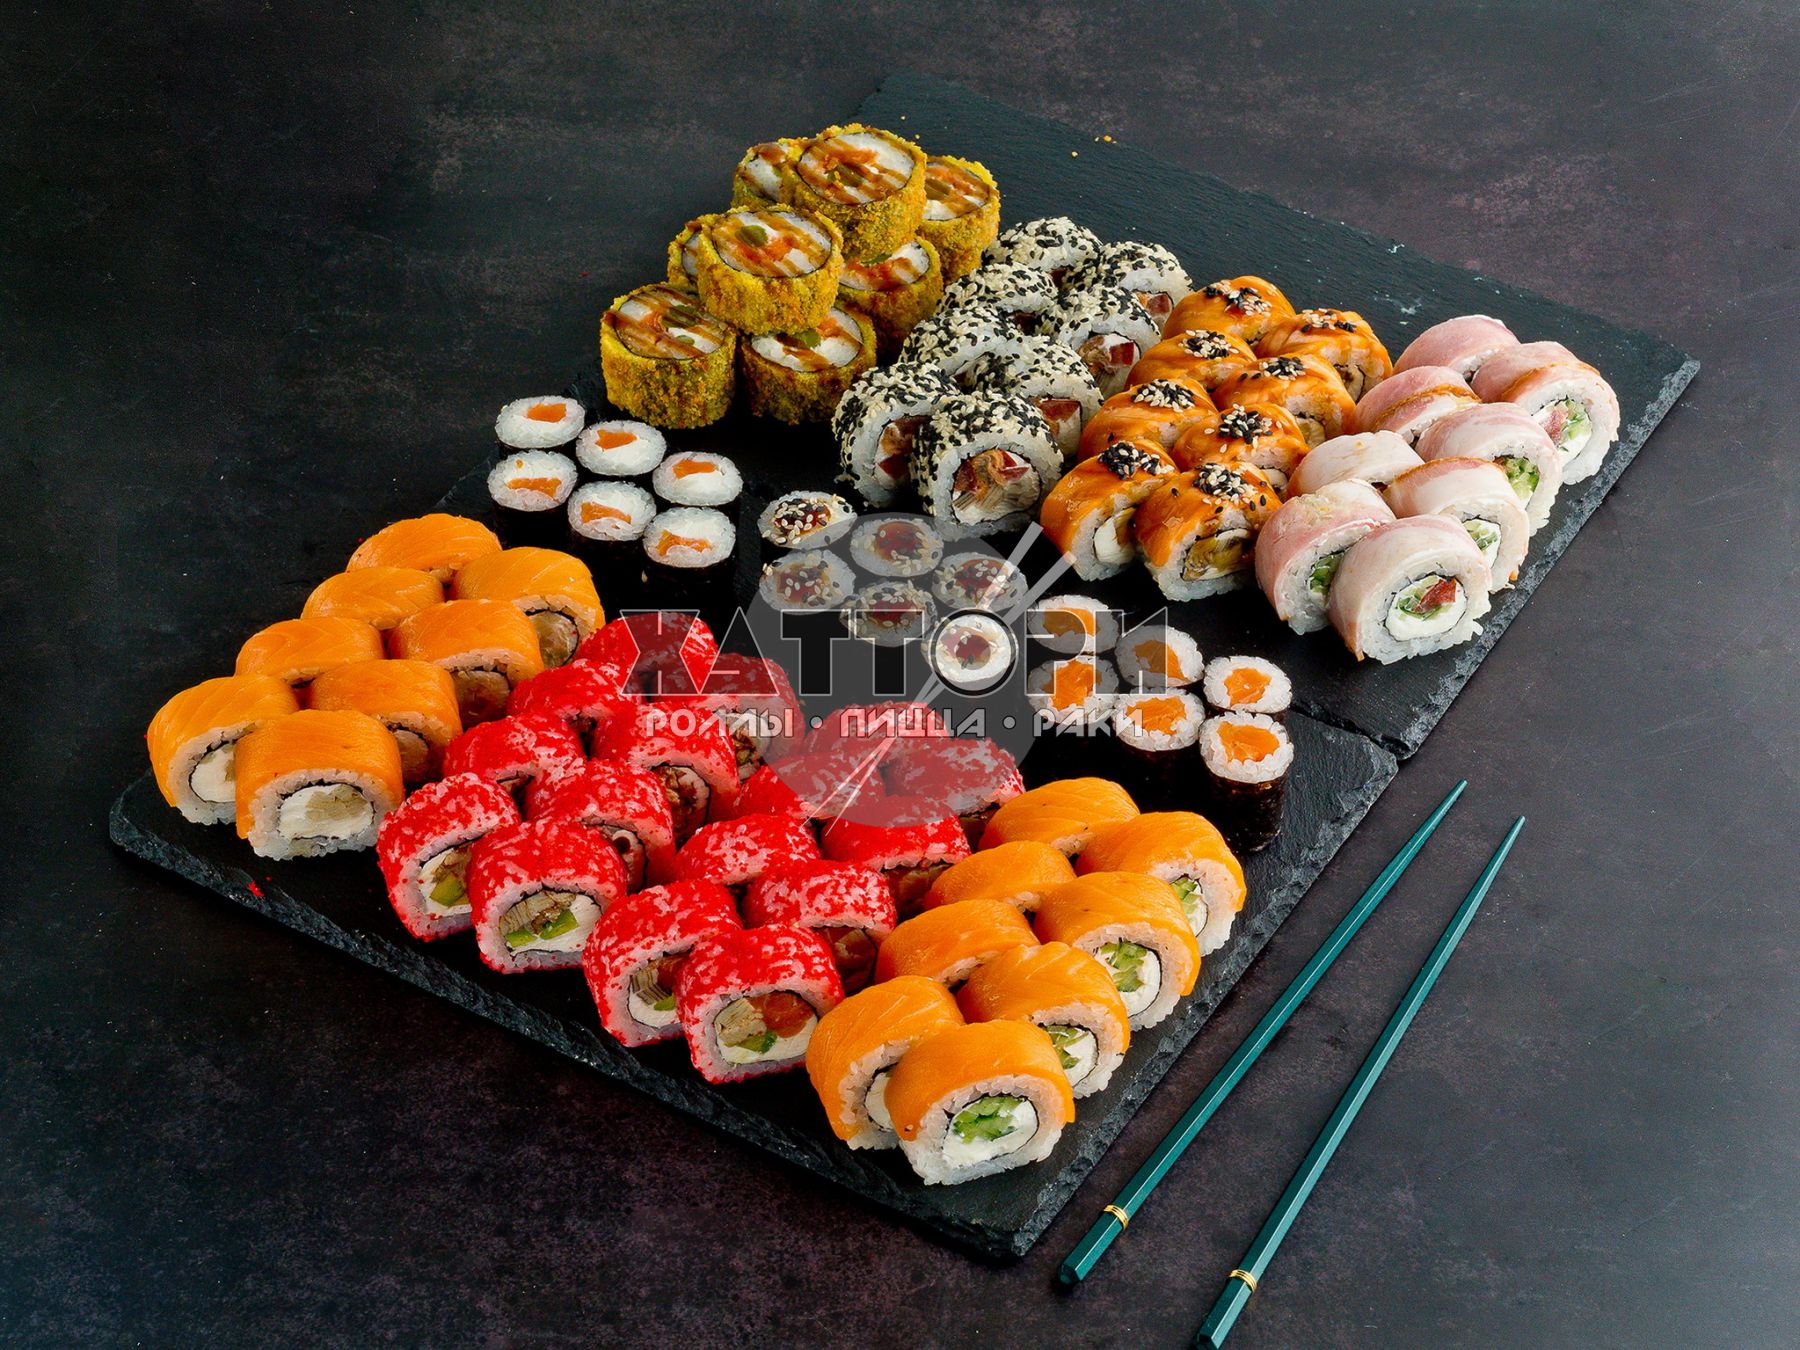 Заказать сеты суши в севастополе фото 20